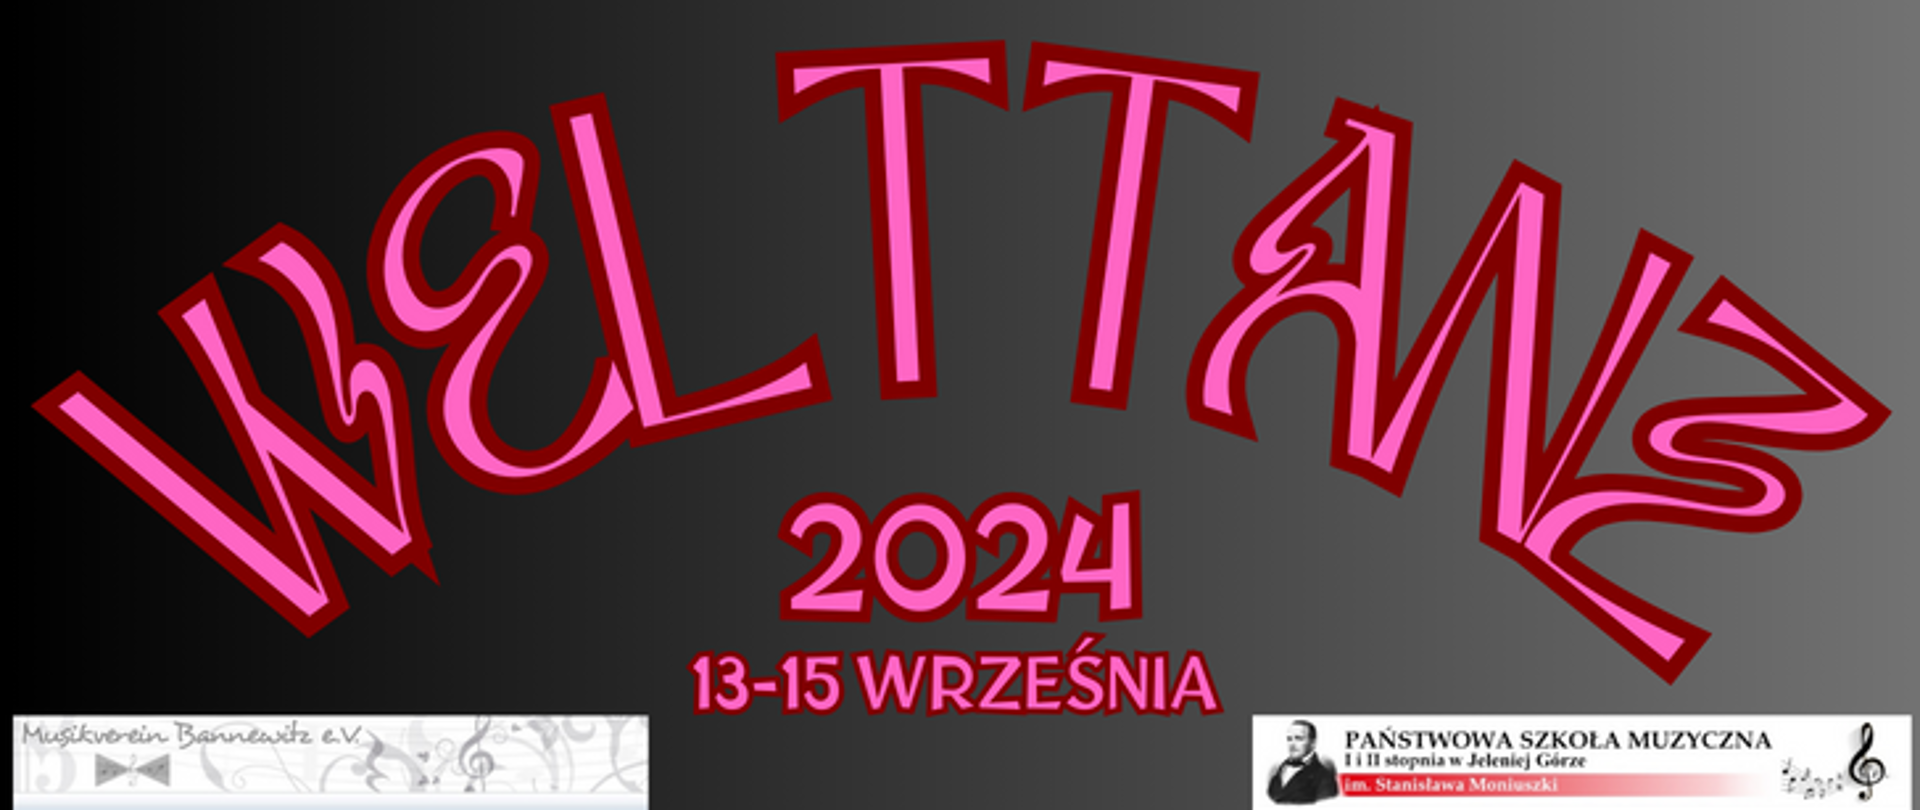 Napis informacyjny o projekcie Welttanz 13-15 września 2024. Na czarnym tle różowo napisy